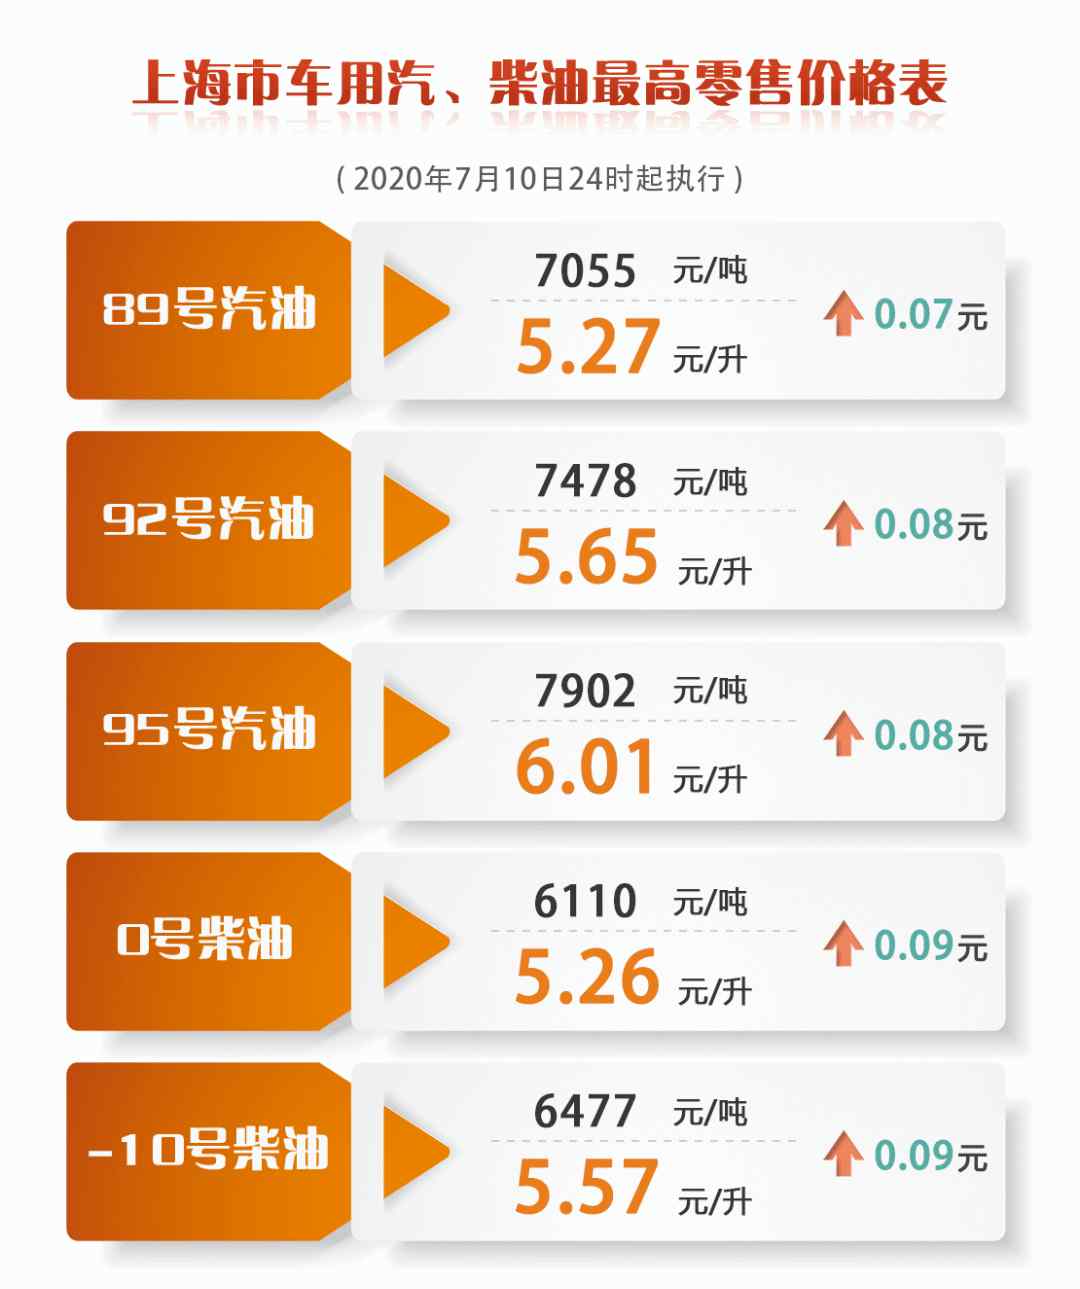 今日上海油价 上海成品油价今天零点起上调